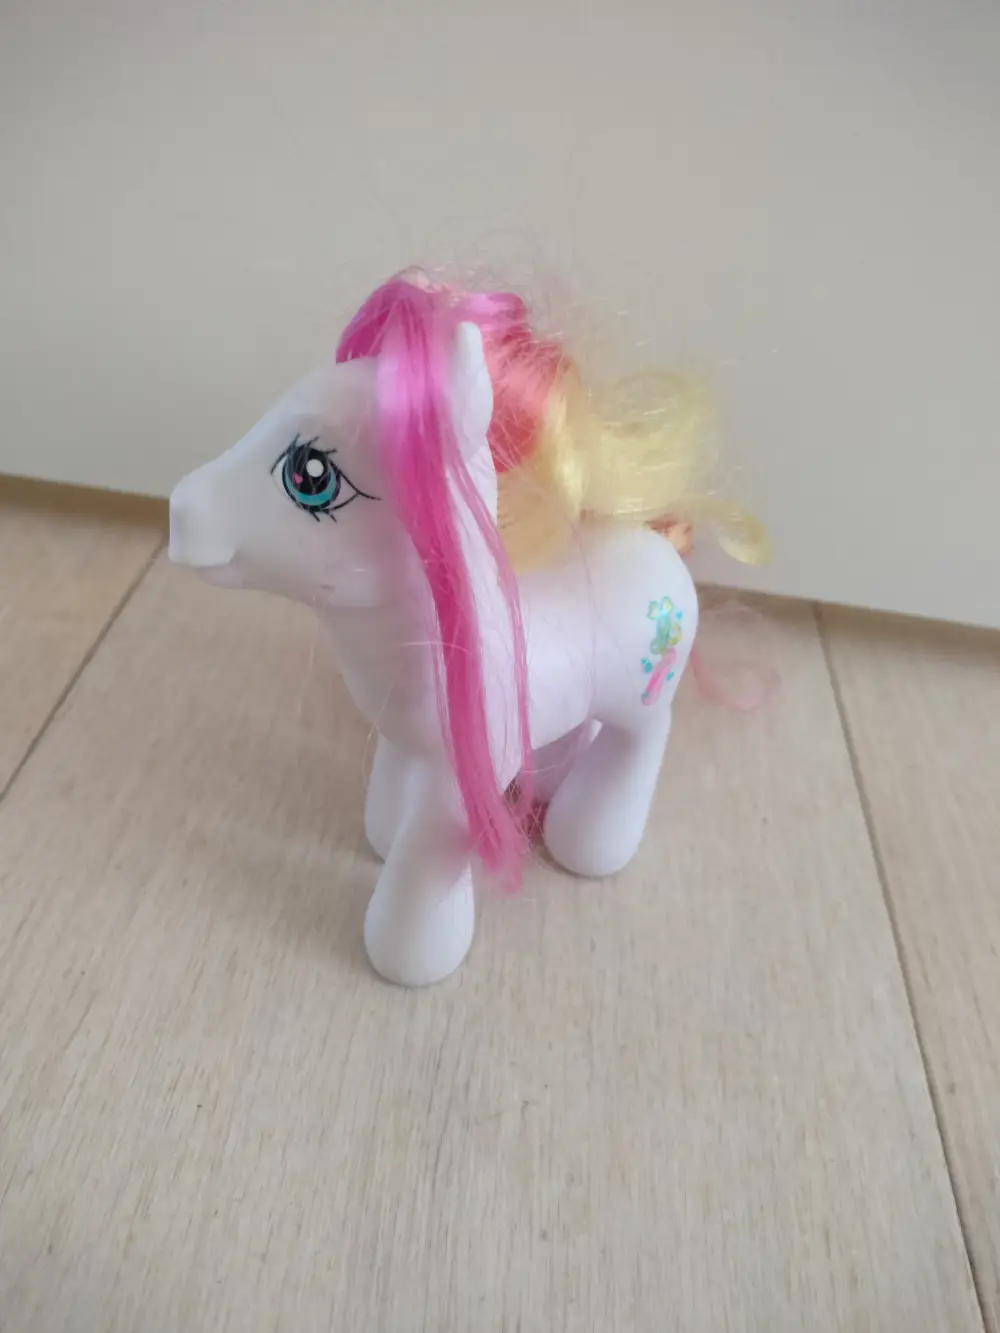 My Little Pony Ponyer